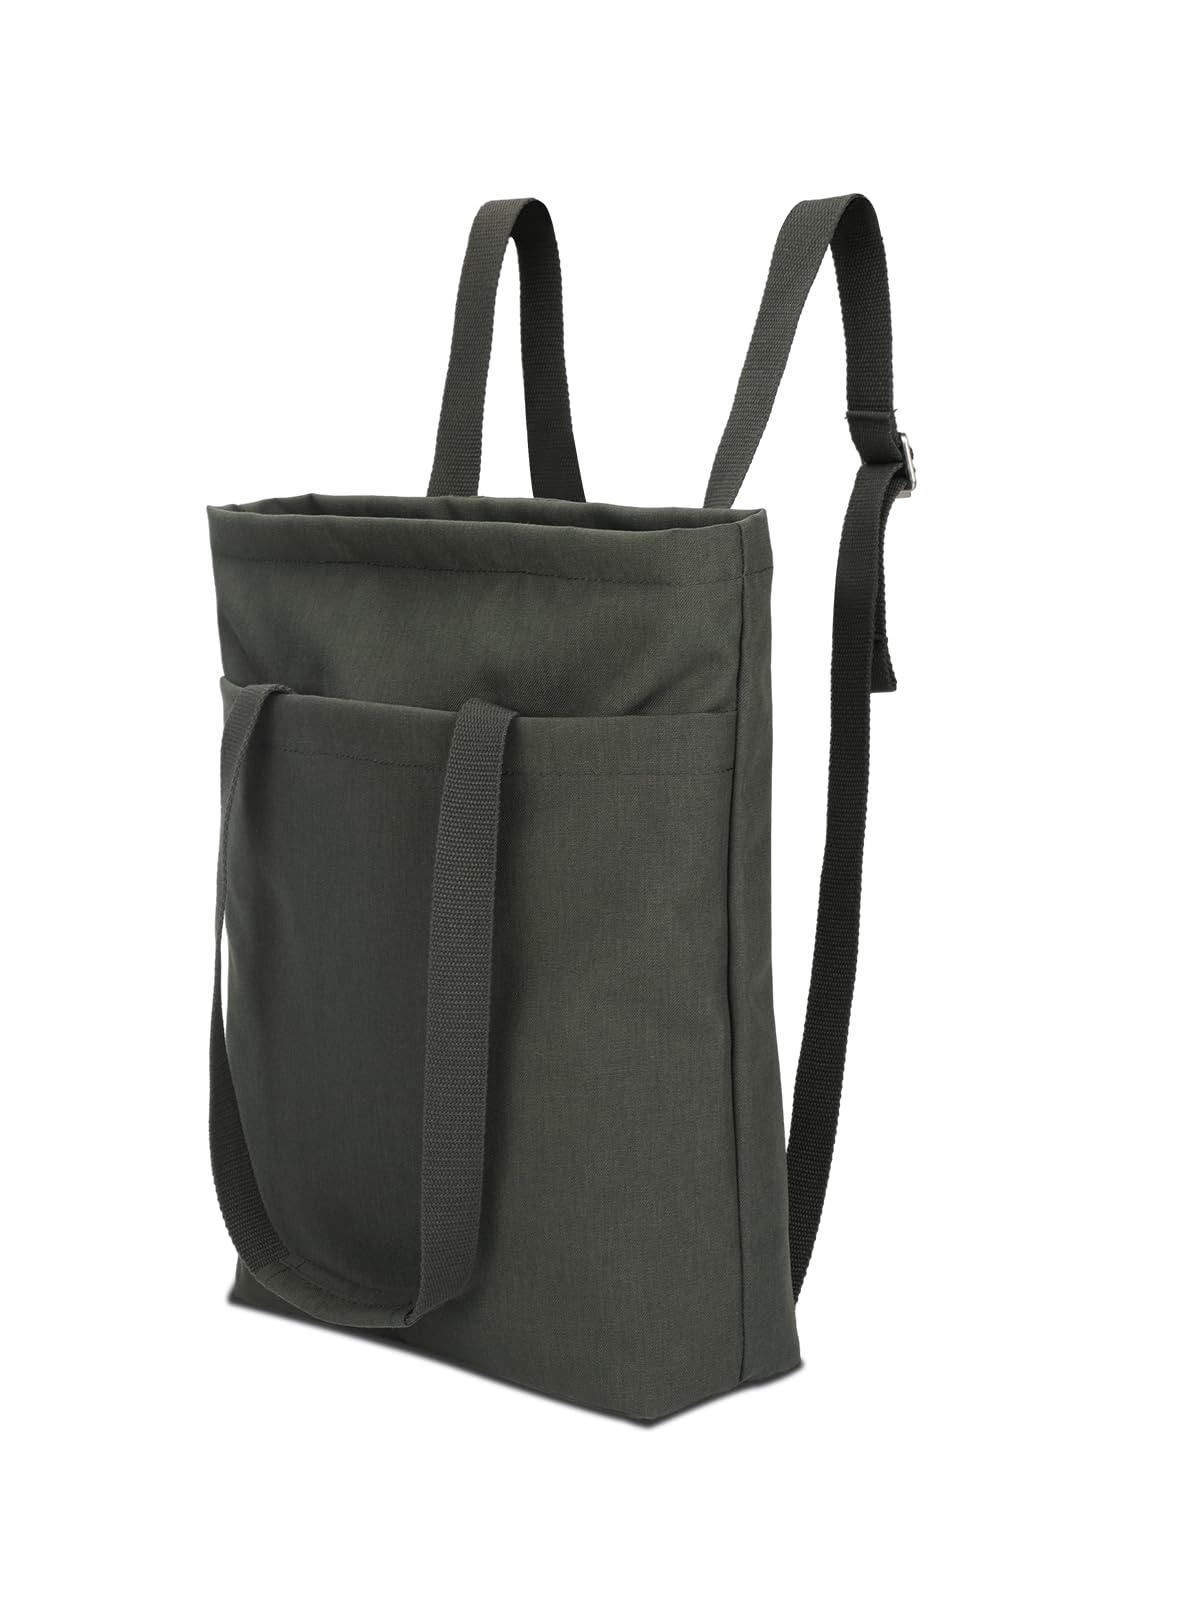 Wholesale School Students Backpack Waterproof School Bags For Laptop Backpack Set computer bag set backpack laptop